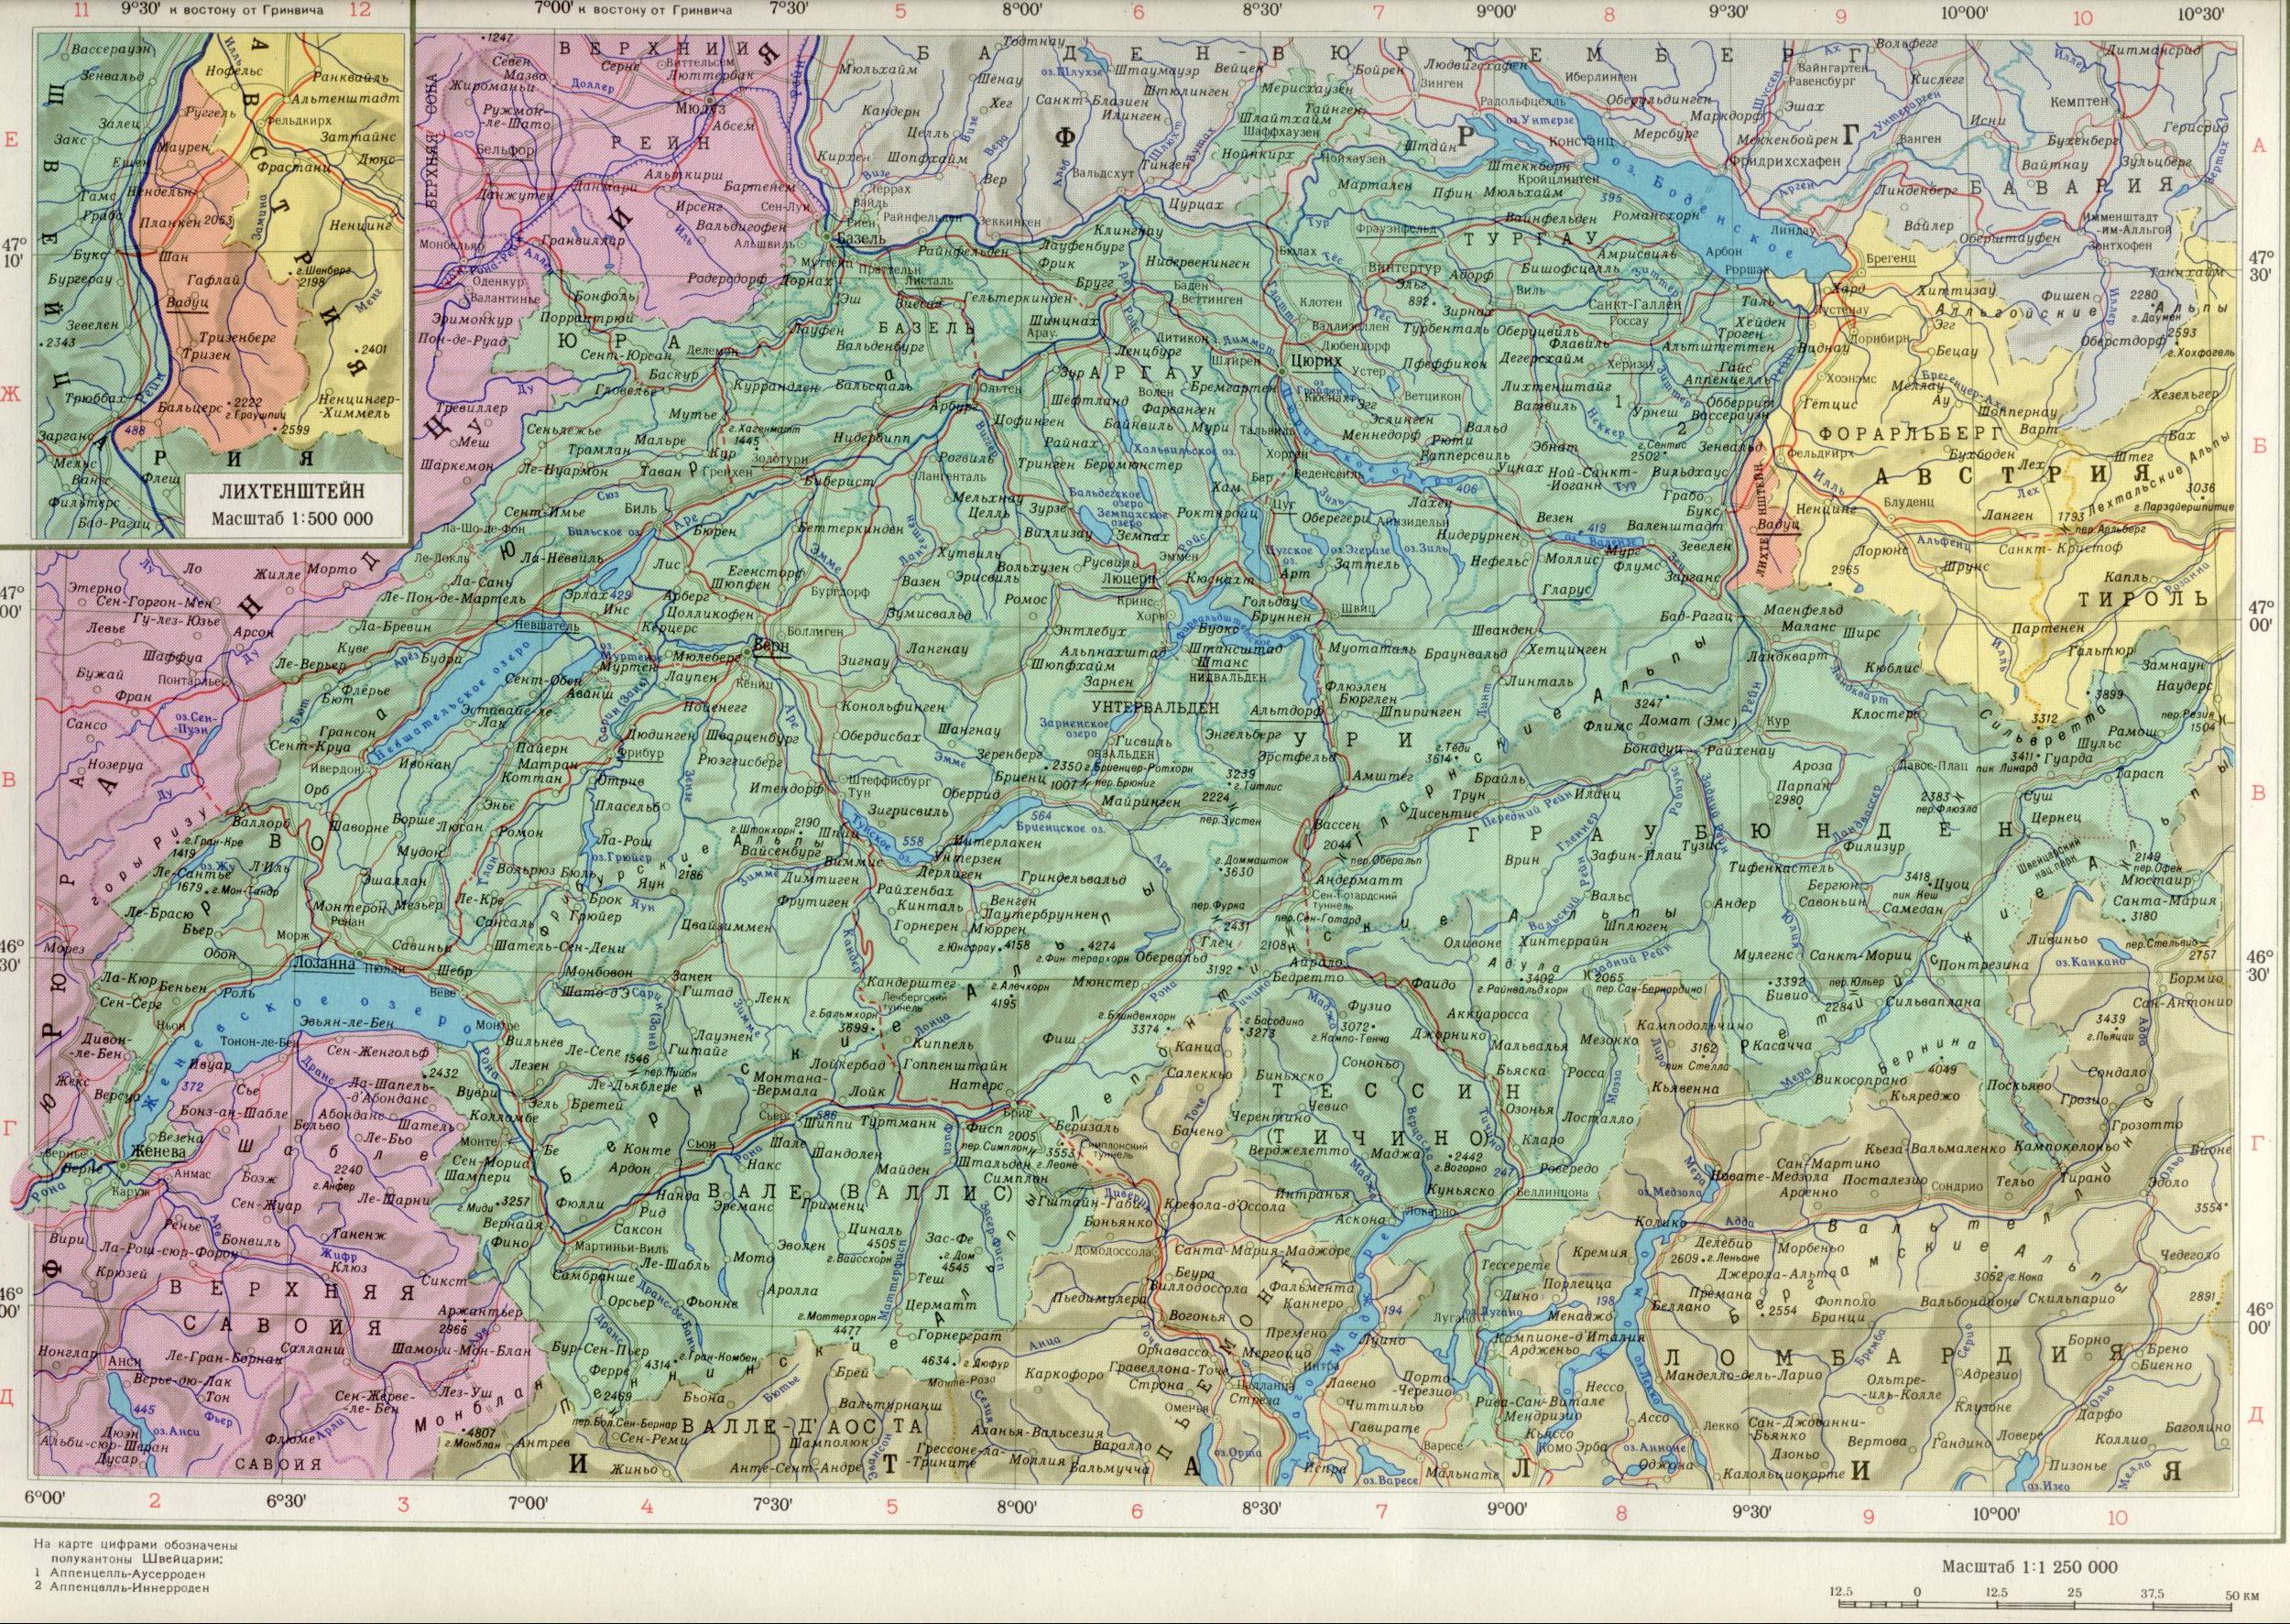 Karte der Schweiz 1cm = 12,5 km. Freie politische Landkarte Europas